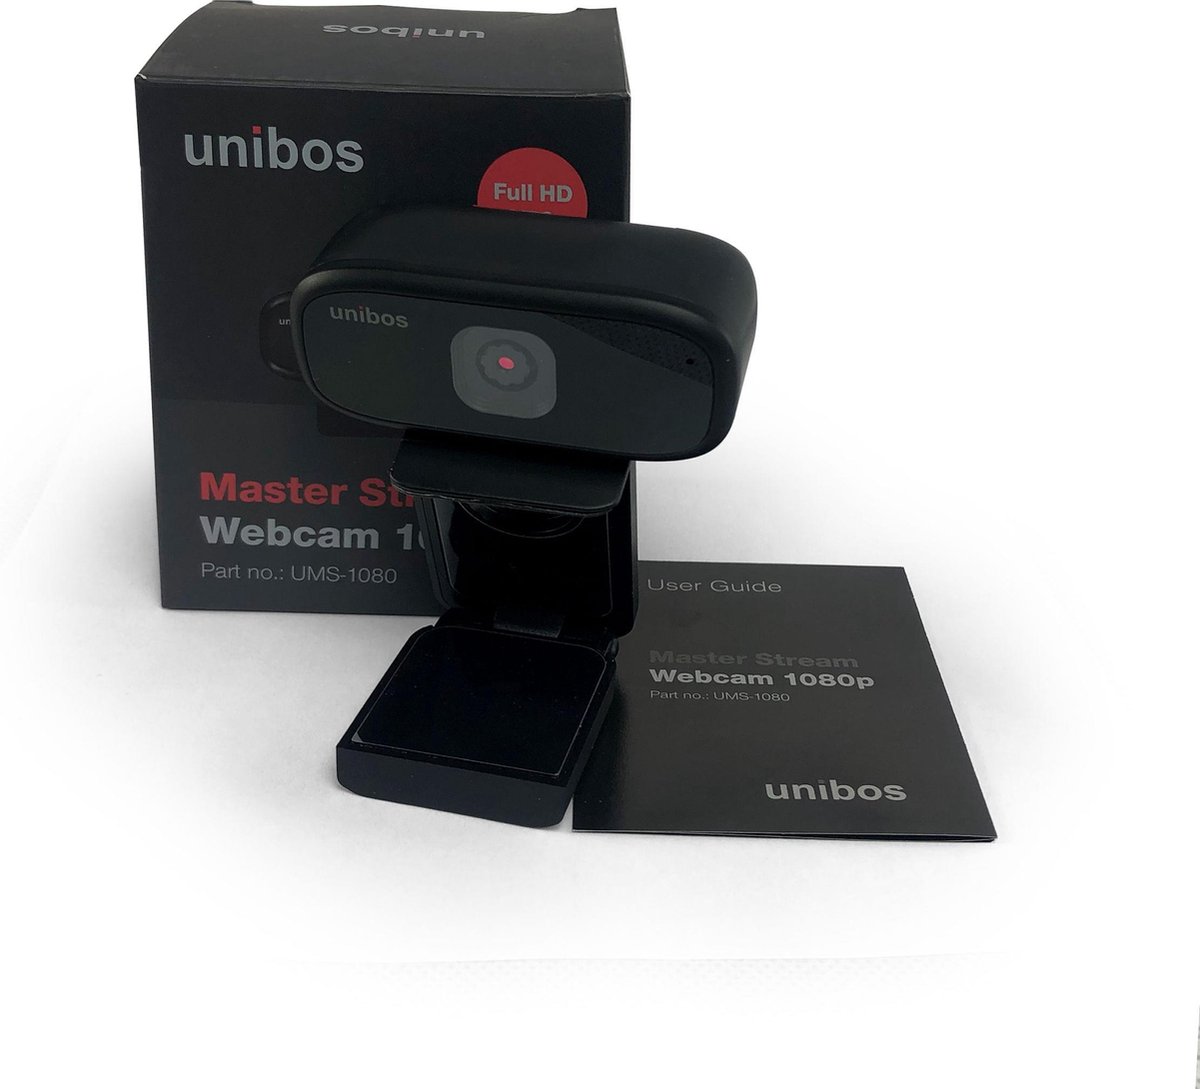 Unibos UMS-180 Master Stream Webcam 1080p